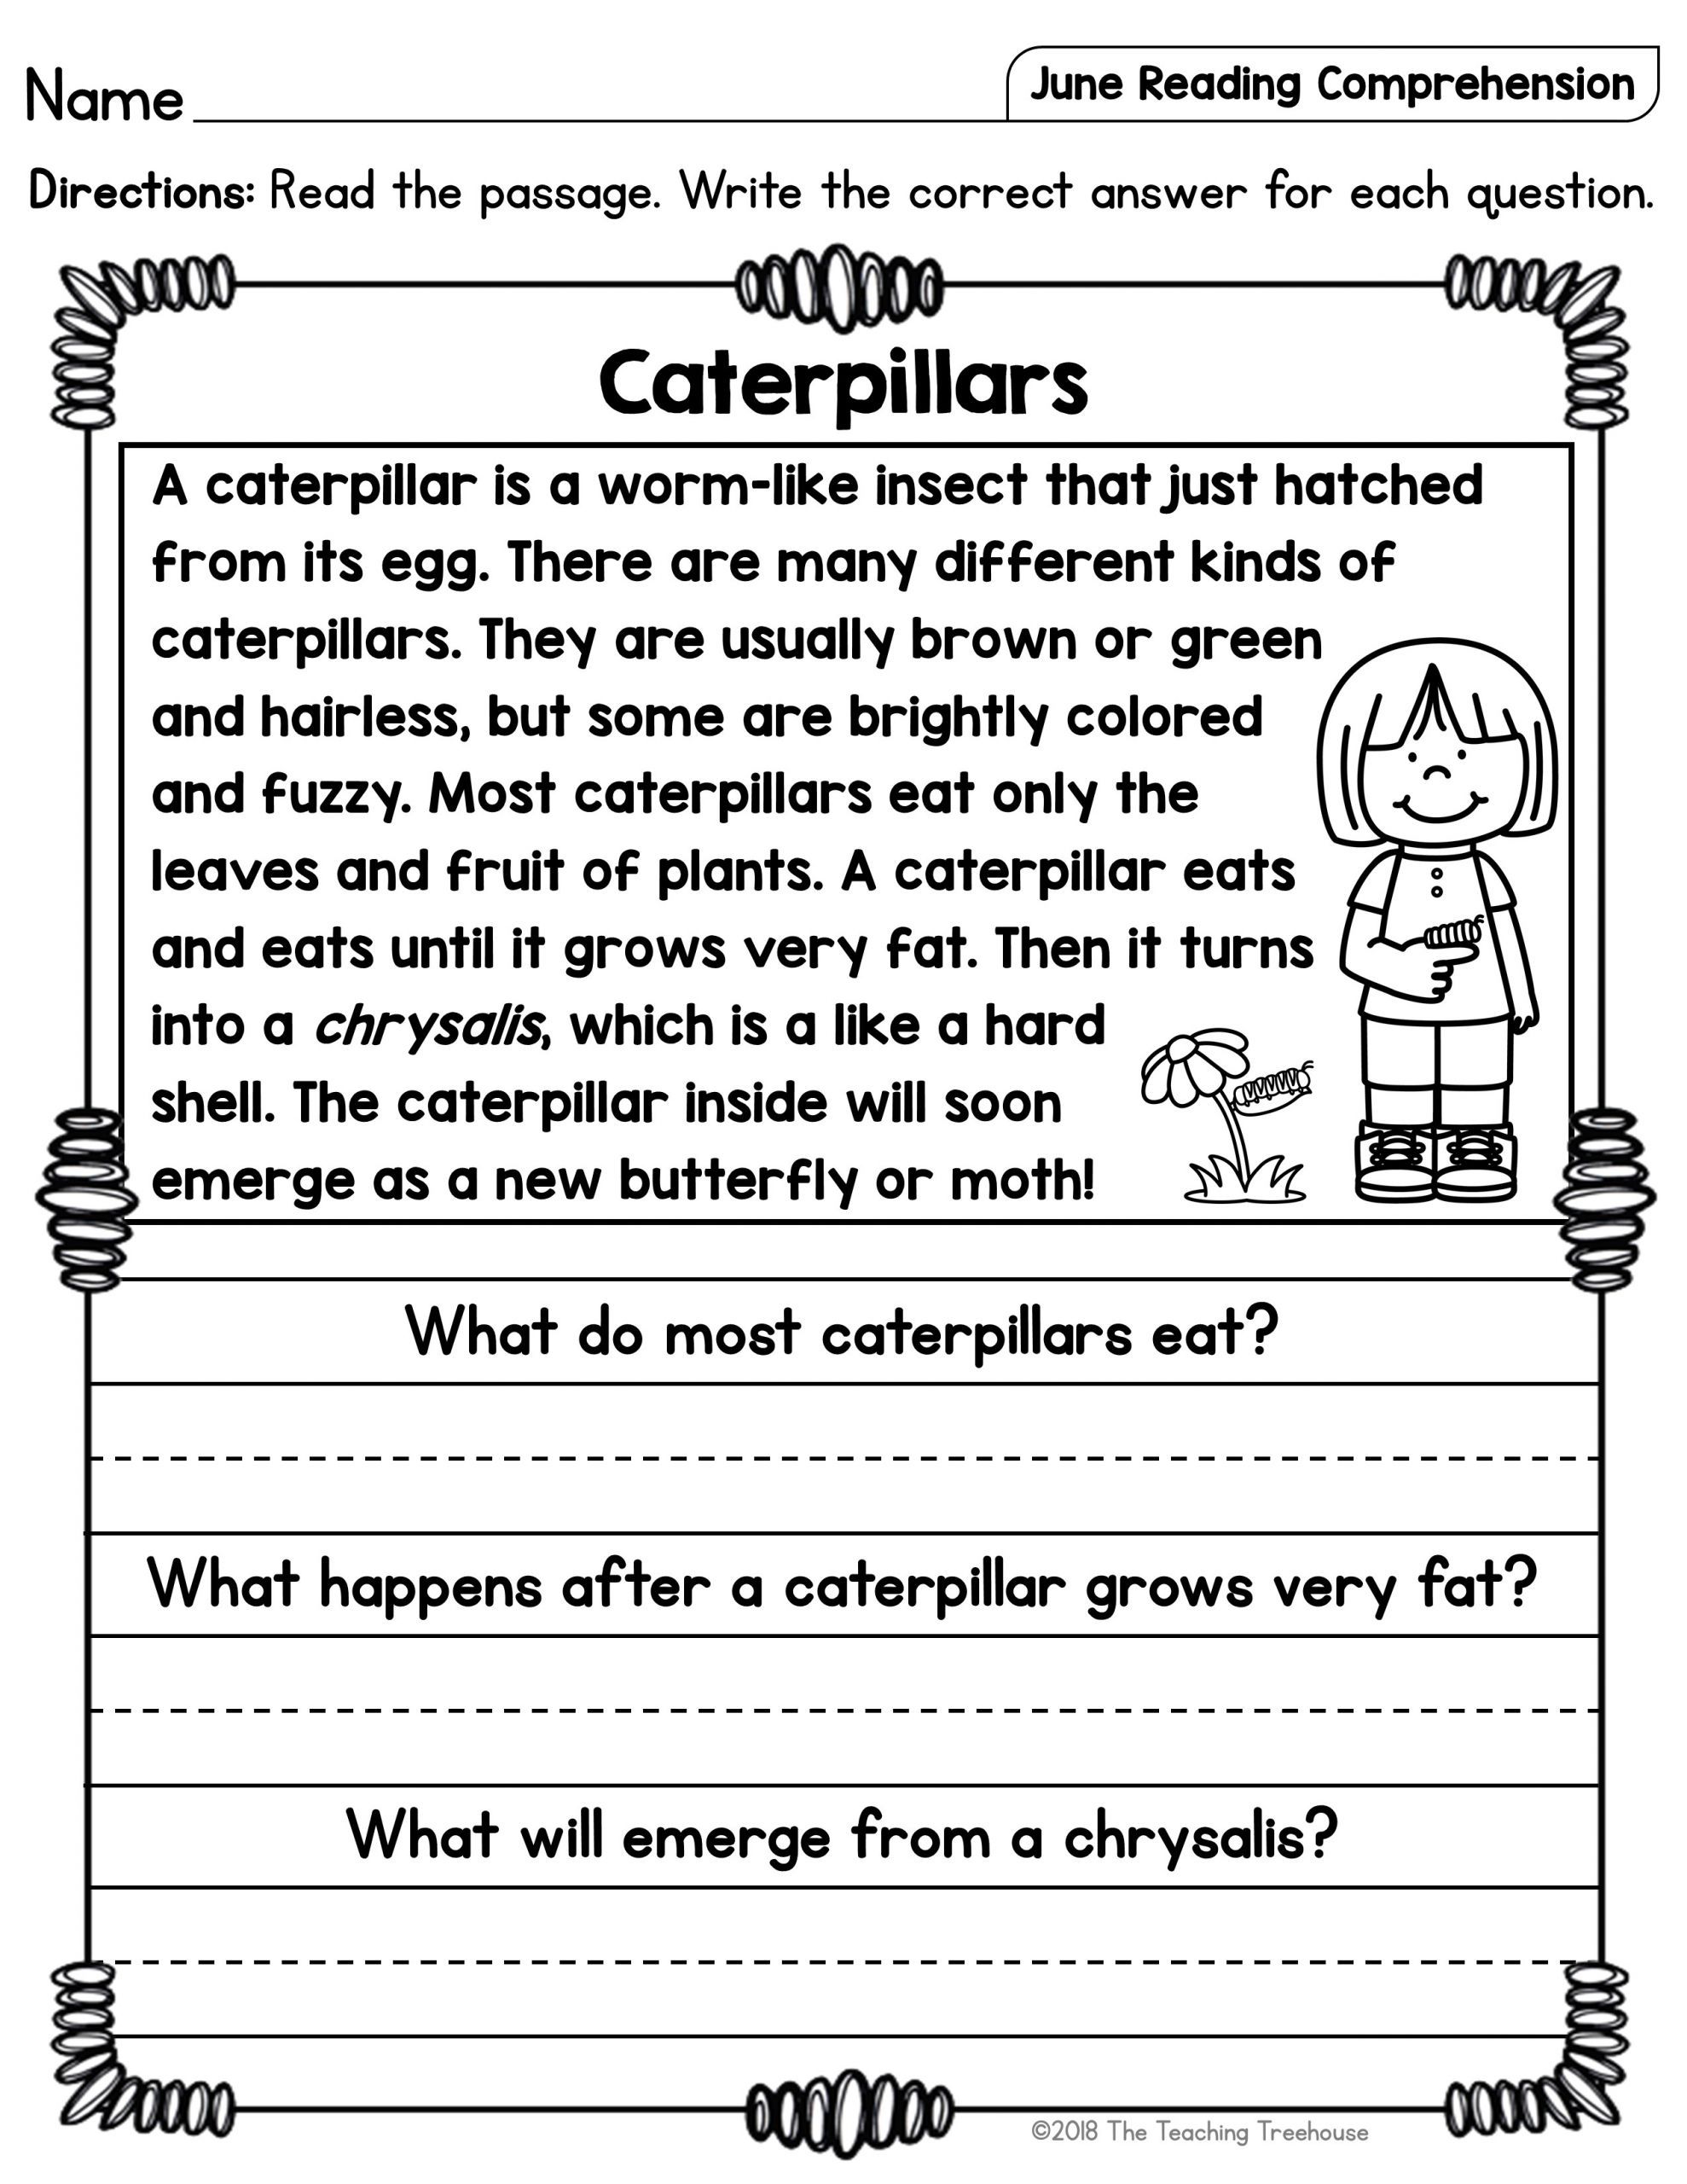 reading-comprehension-for-4-year-olds-askworksheet